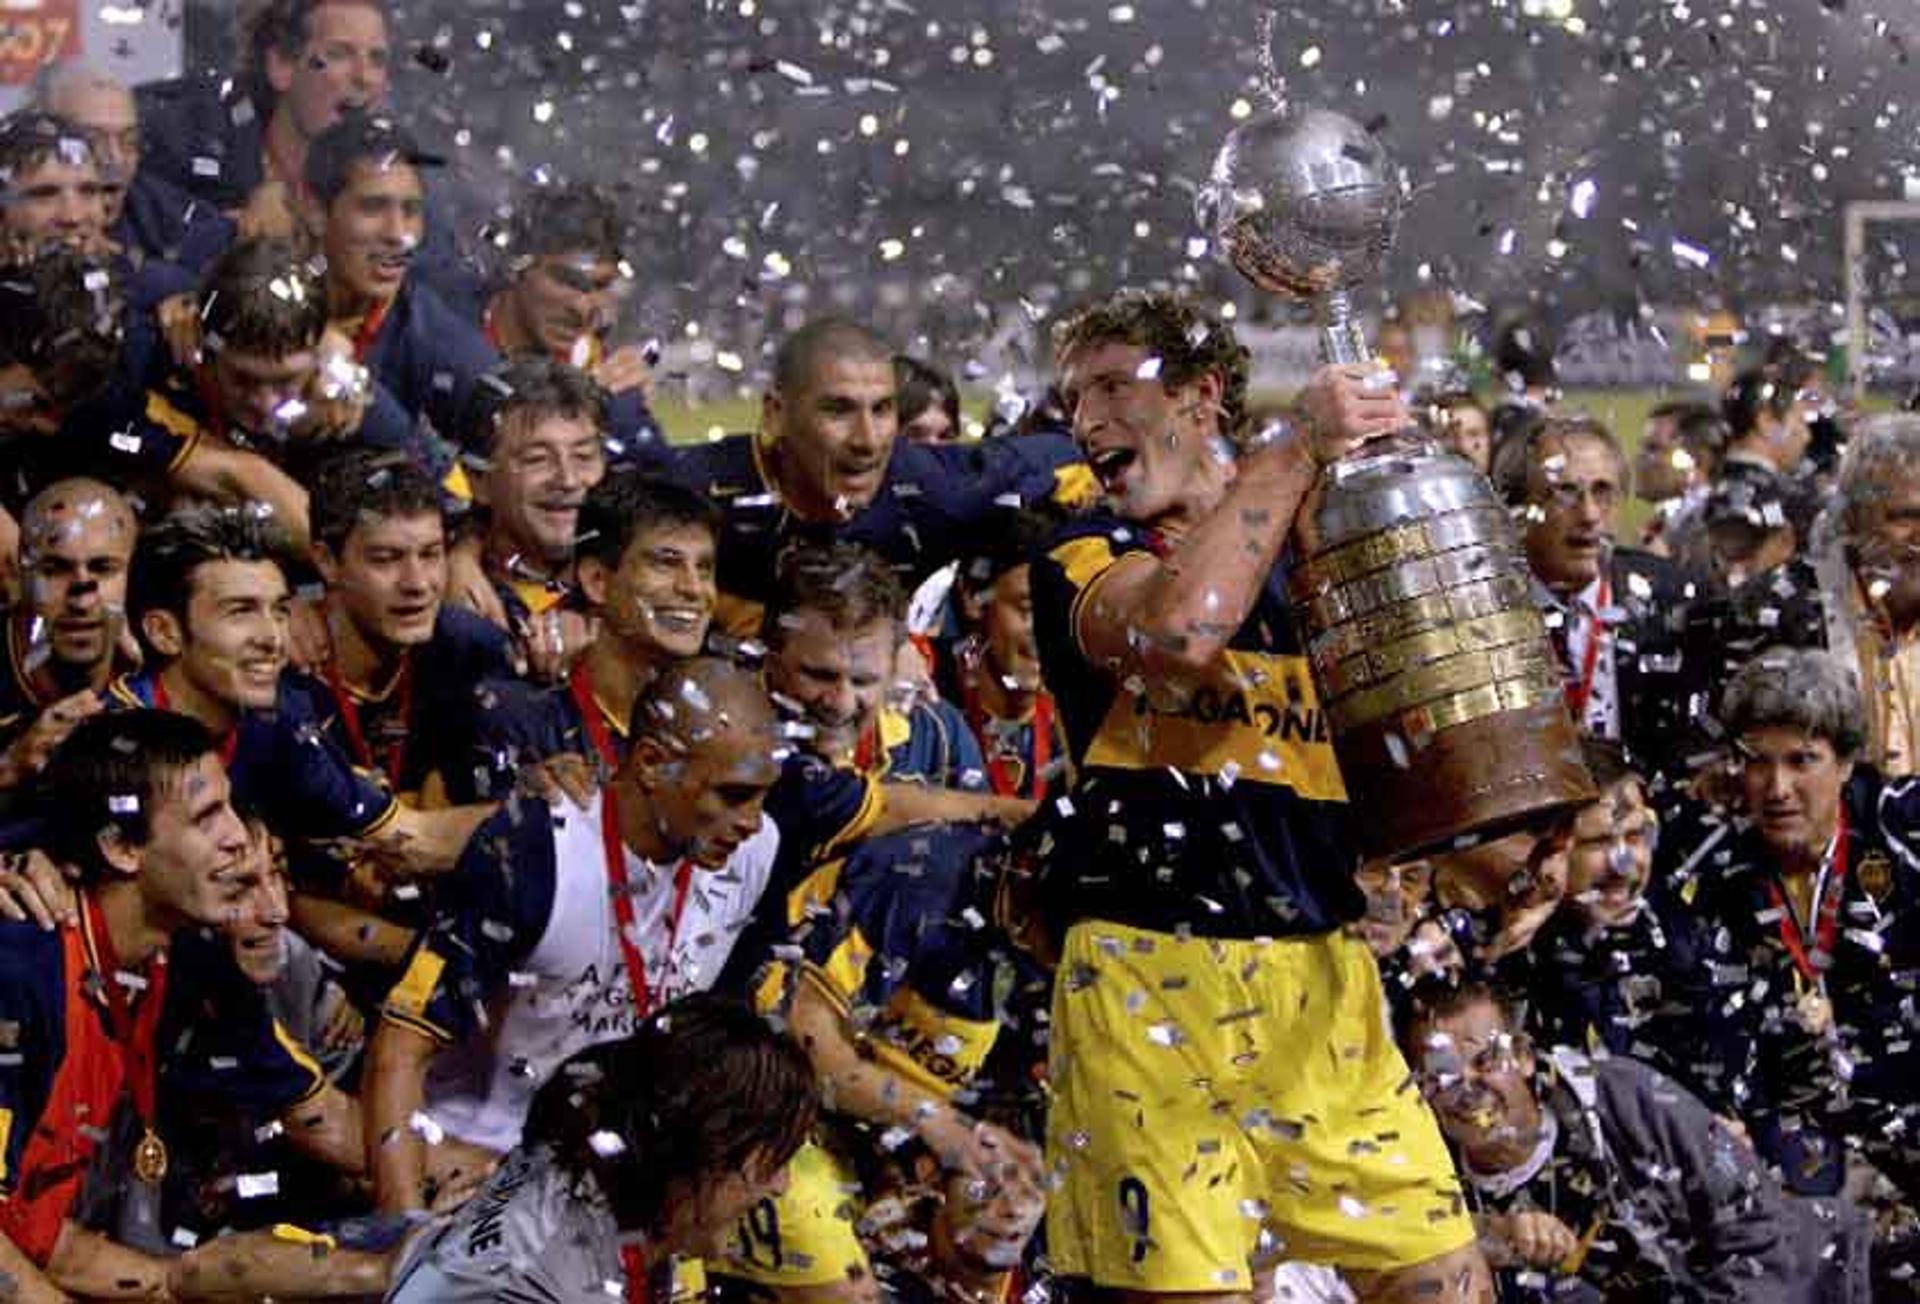 A Argentina possui 24 títulos na Libertadores, sendo o maior país com o título intercontinental